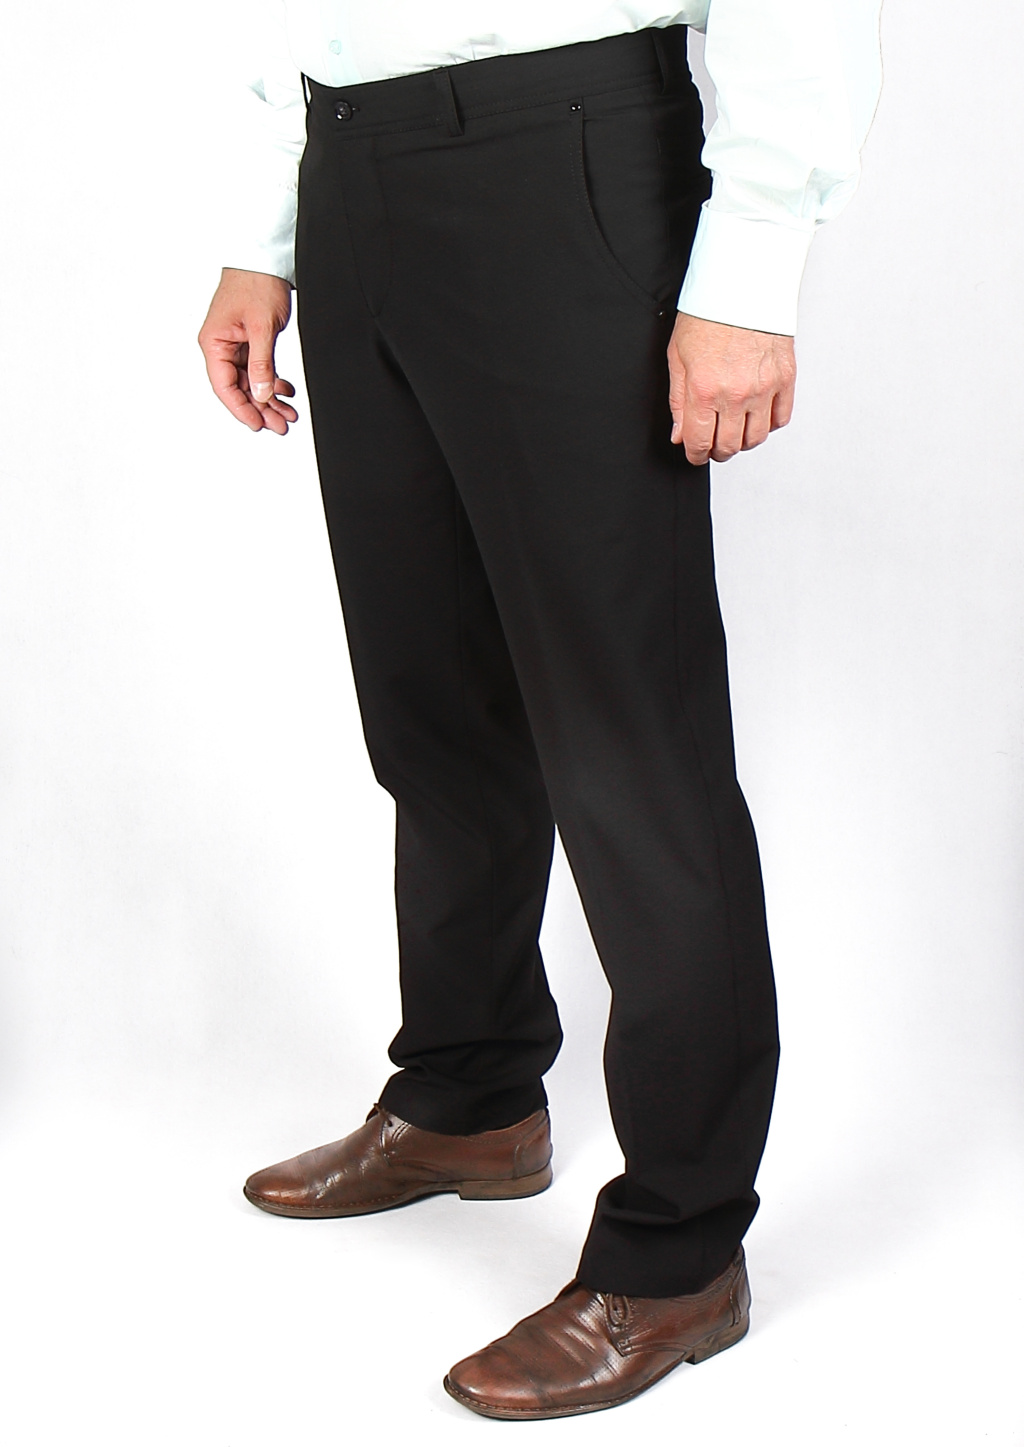 Купить брюки на флисе мужские - флисовые штаны в интернет-магазине «Мир брюк »